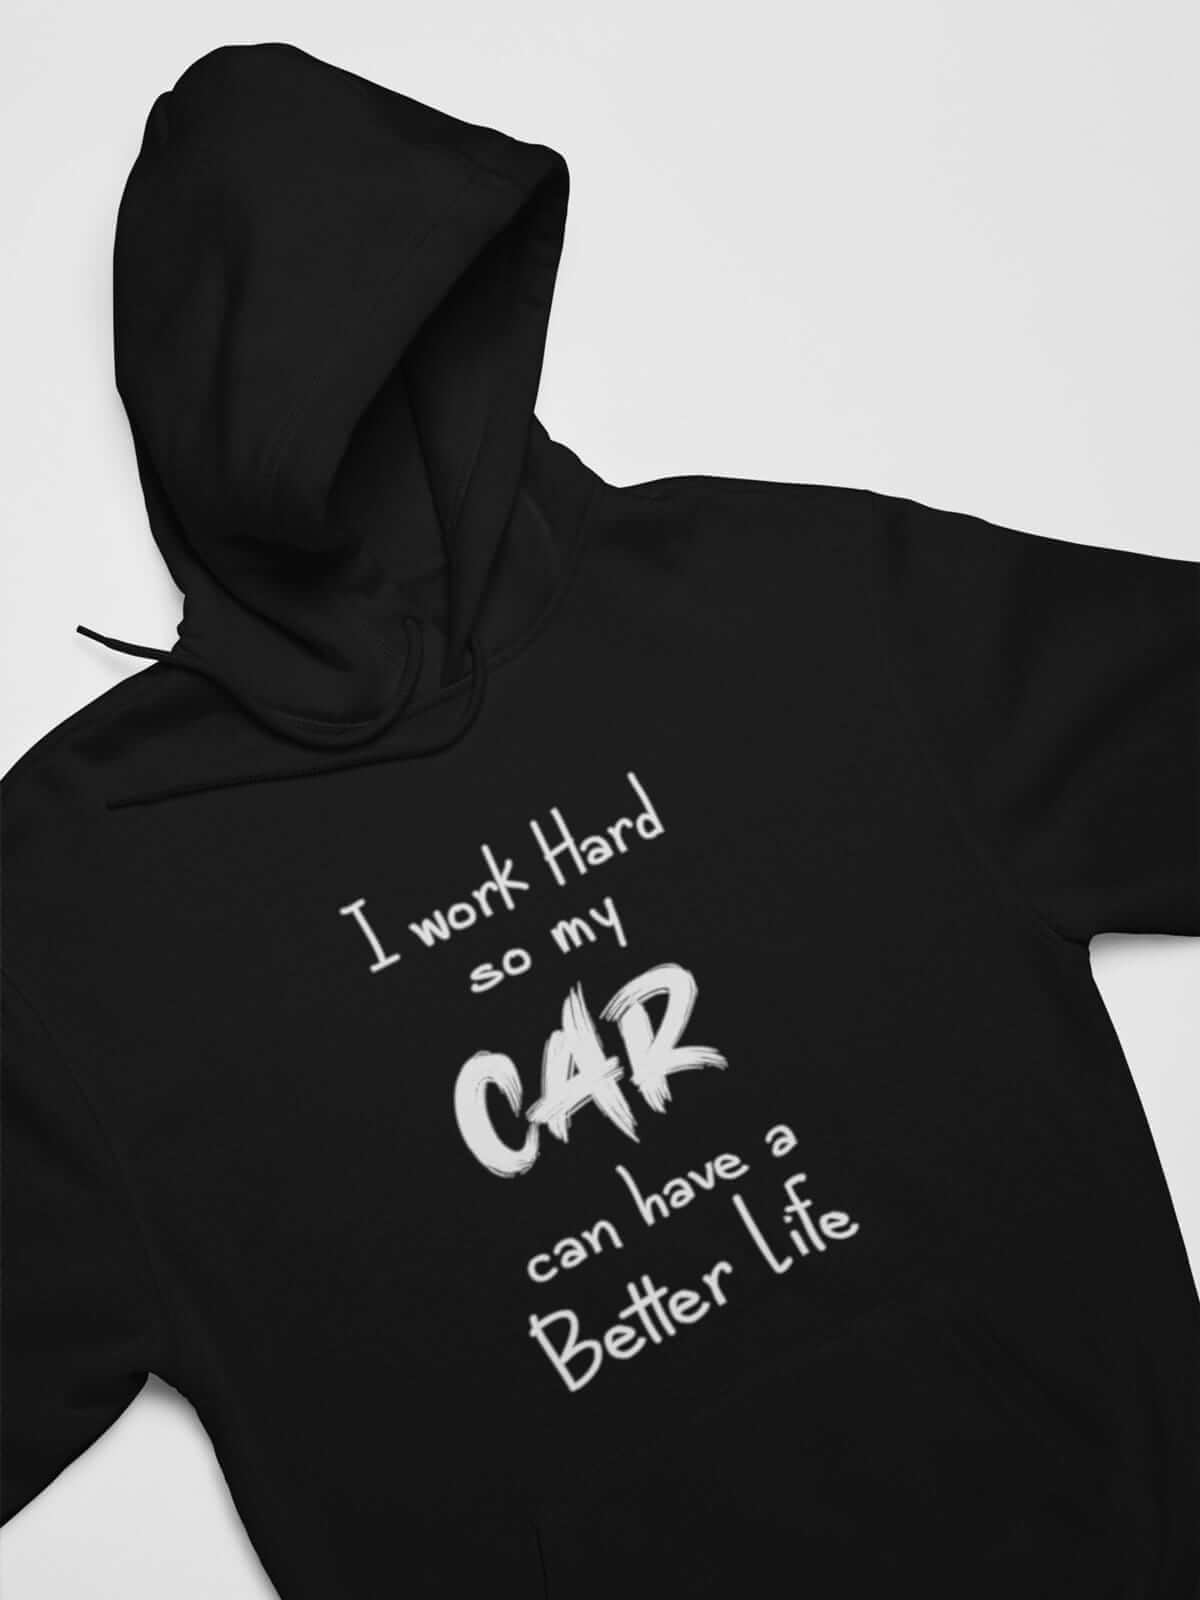 Car Guys black hoodie with funny text printed on it, JDM sweatshirt, car guy gift, car lover, car fan, car enthusiast, petrolhead, JDM lover, boyfriend gift idea